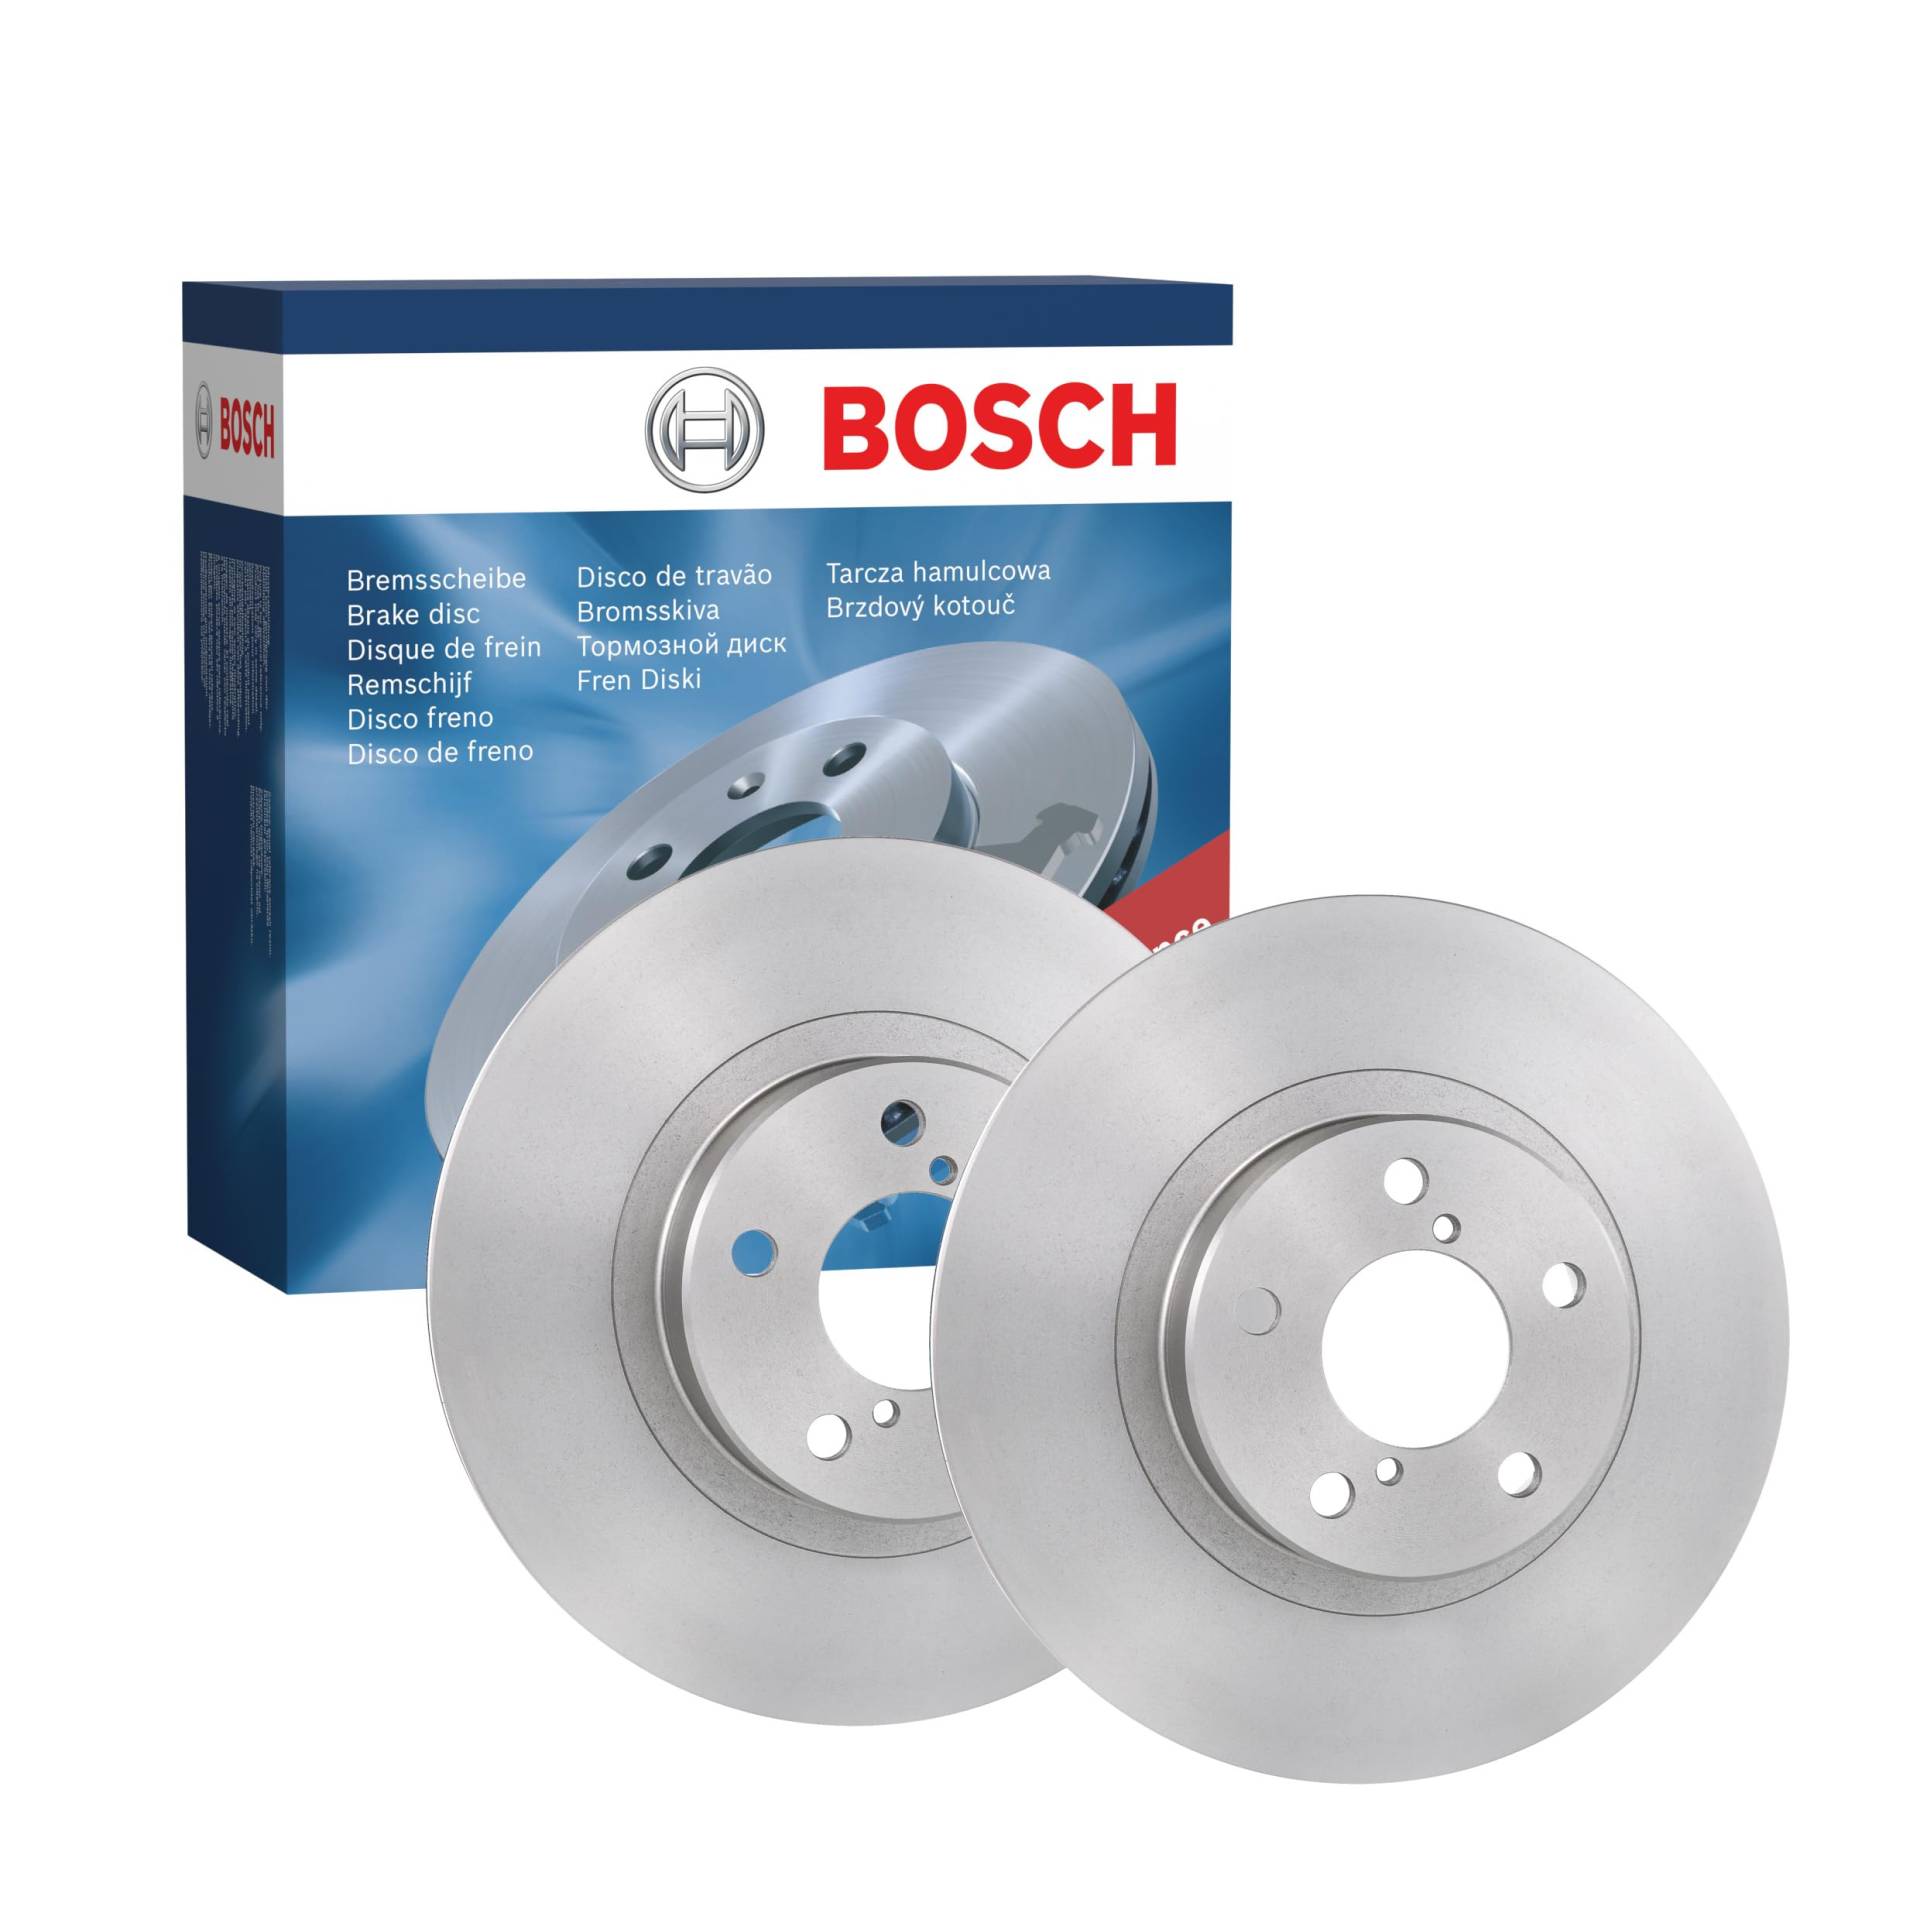 Bosch BD984 Bremsscheiben - Vorderachse - ECE-R90 Zertifizierung - zwei Bremsscheiben pro Set von Bosch Automotive